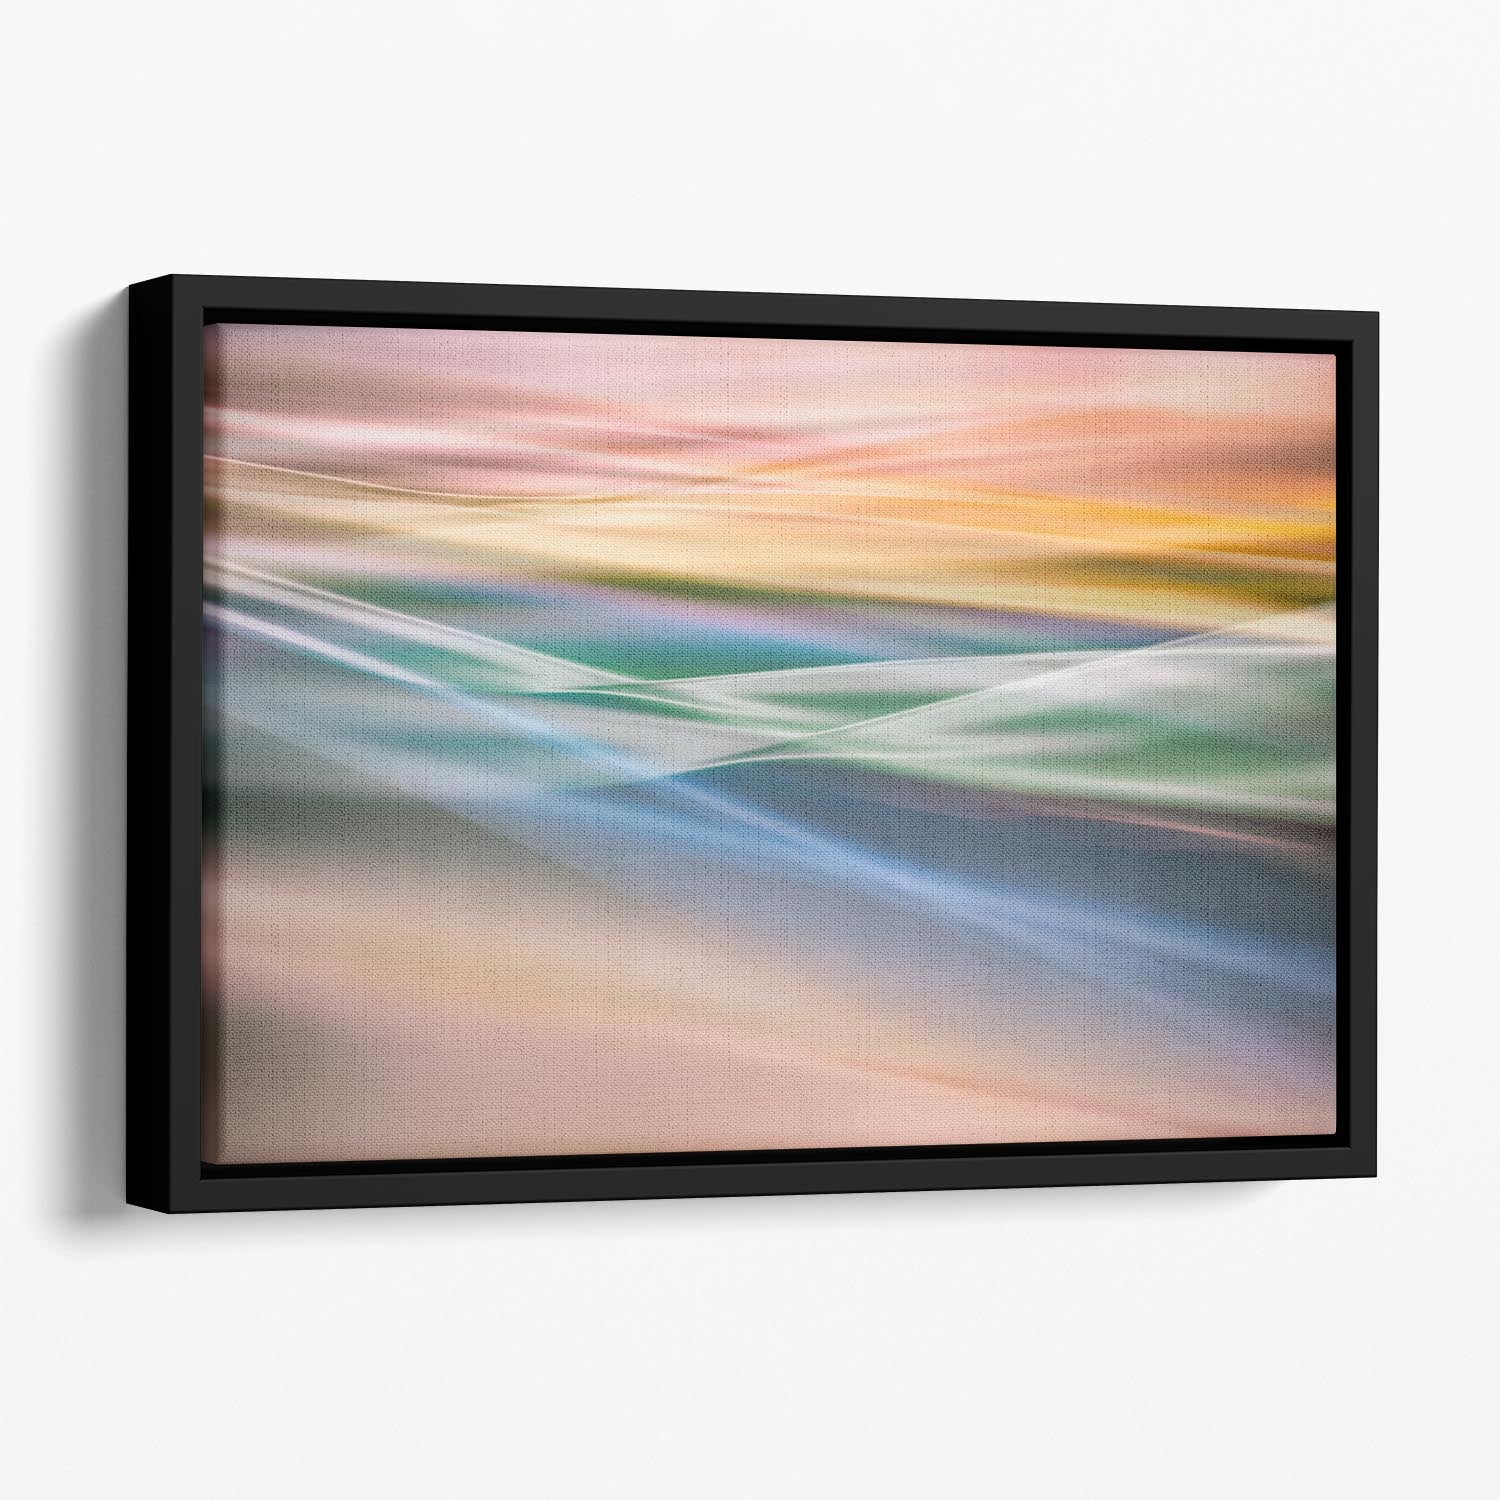 Coloured Waves Floating Framed Canvas - Canvas Art Rocks - 1